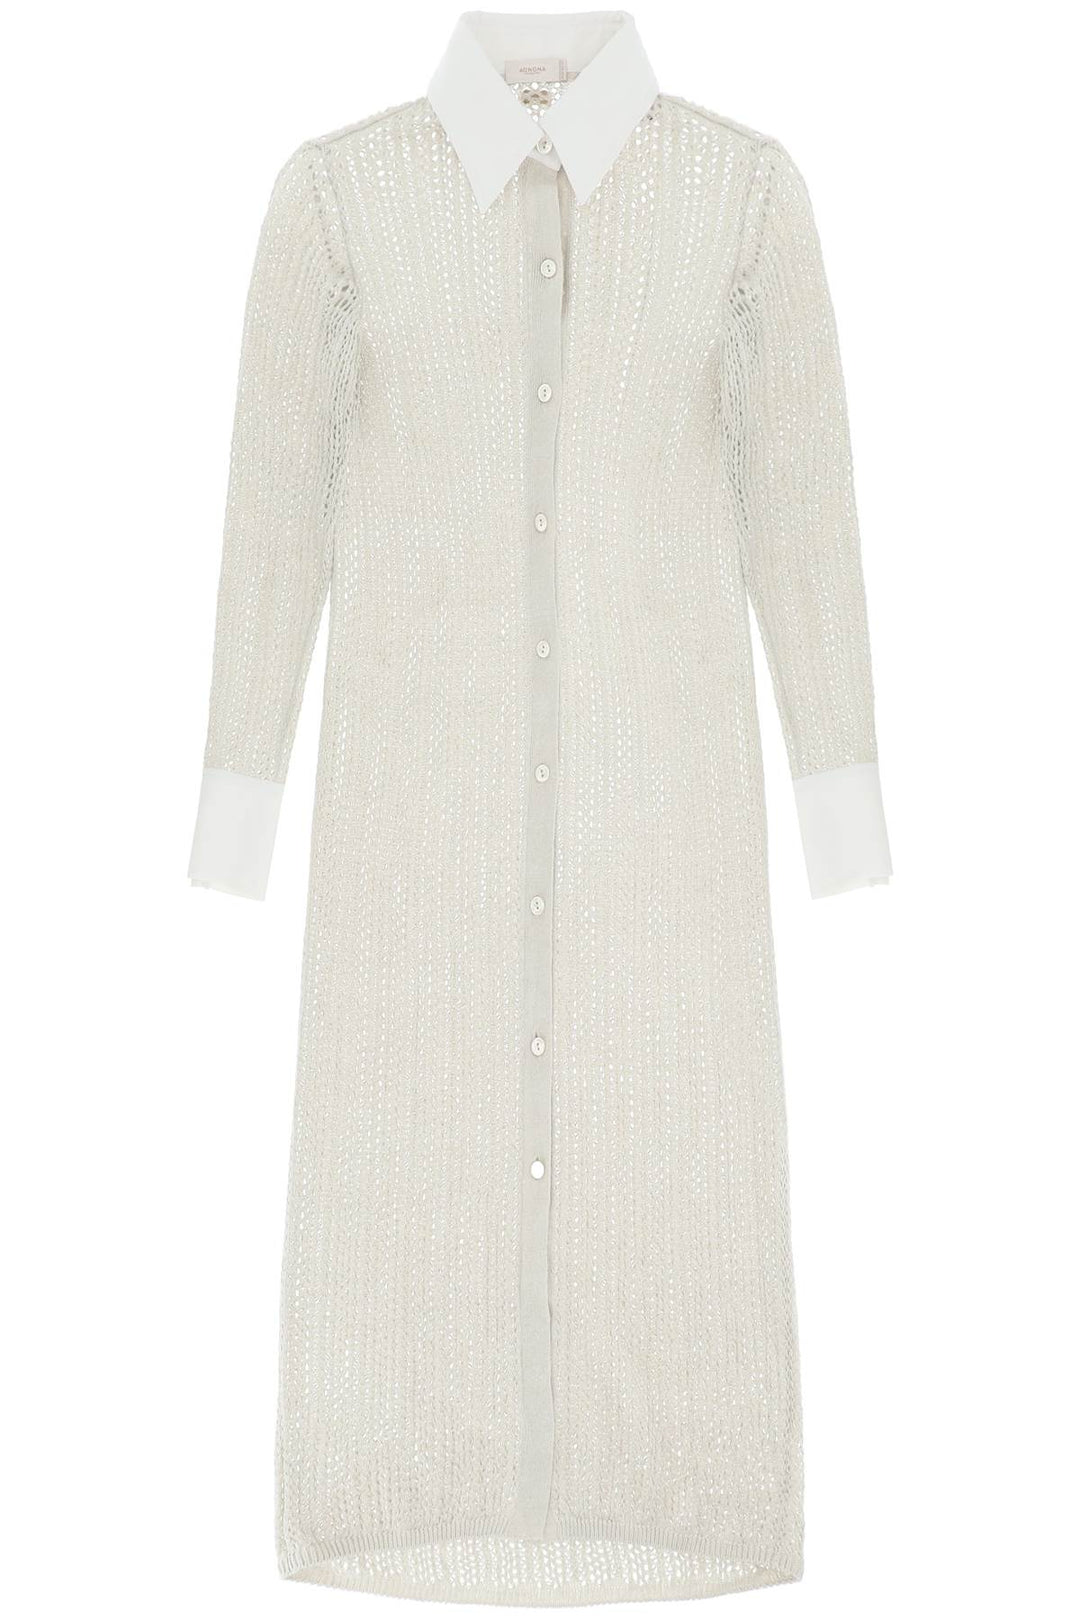 Agnona linen, cashmere and silk knit shirt dress-0